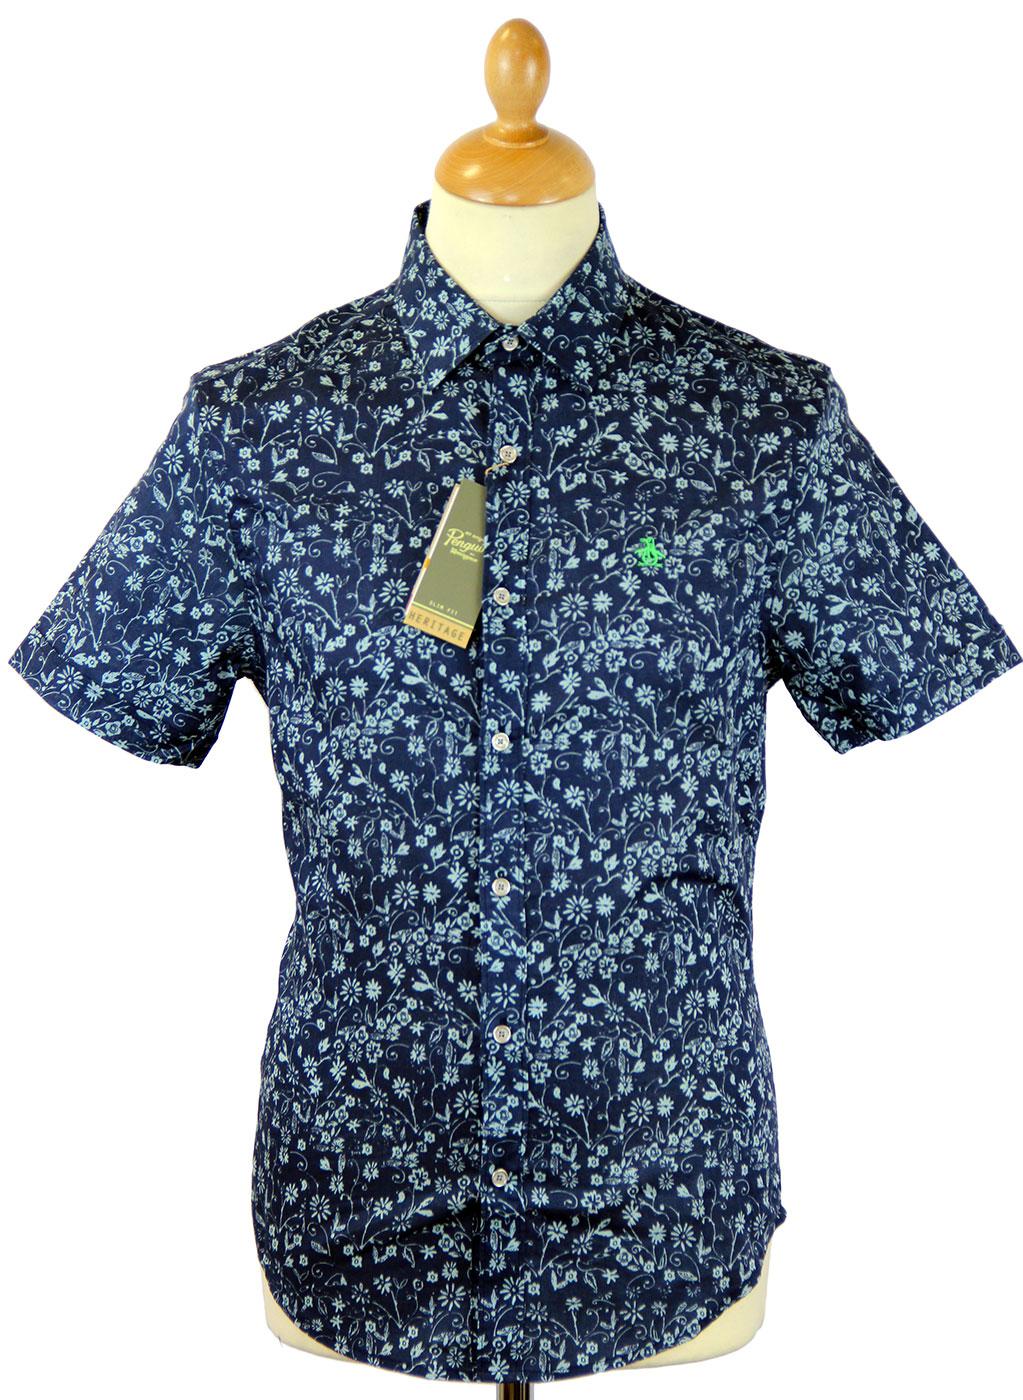 Ditsy Floral ORIGINAL PENGUIN Retro 60s Mod Shirt